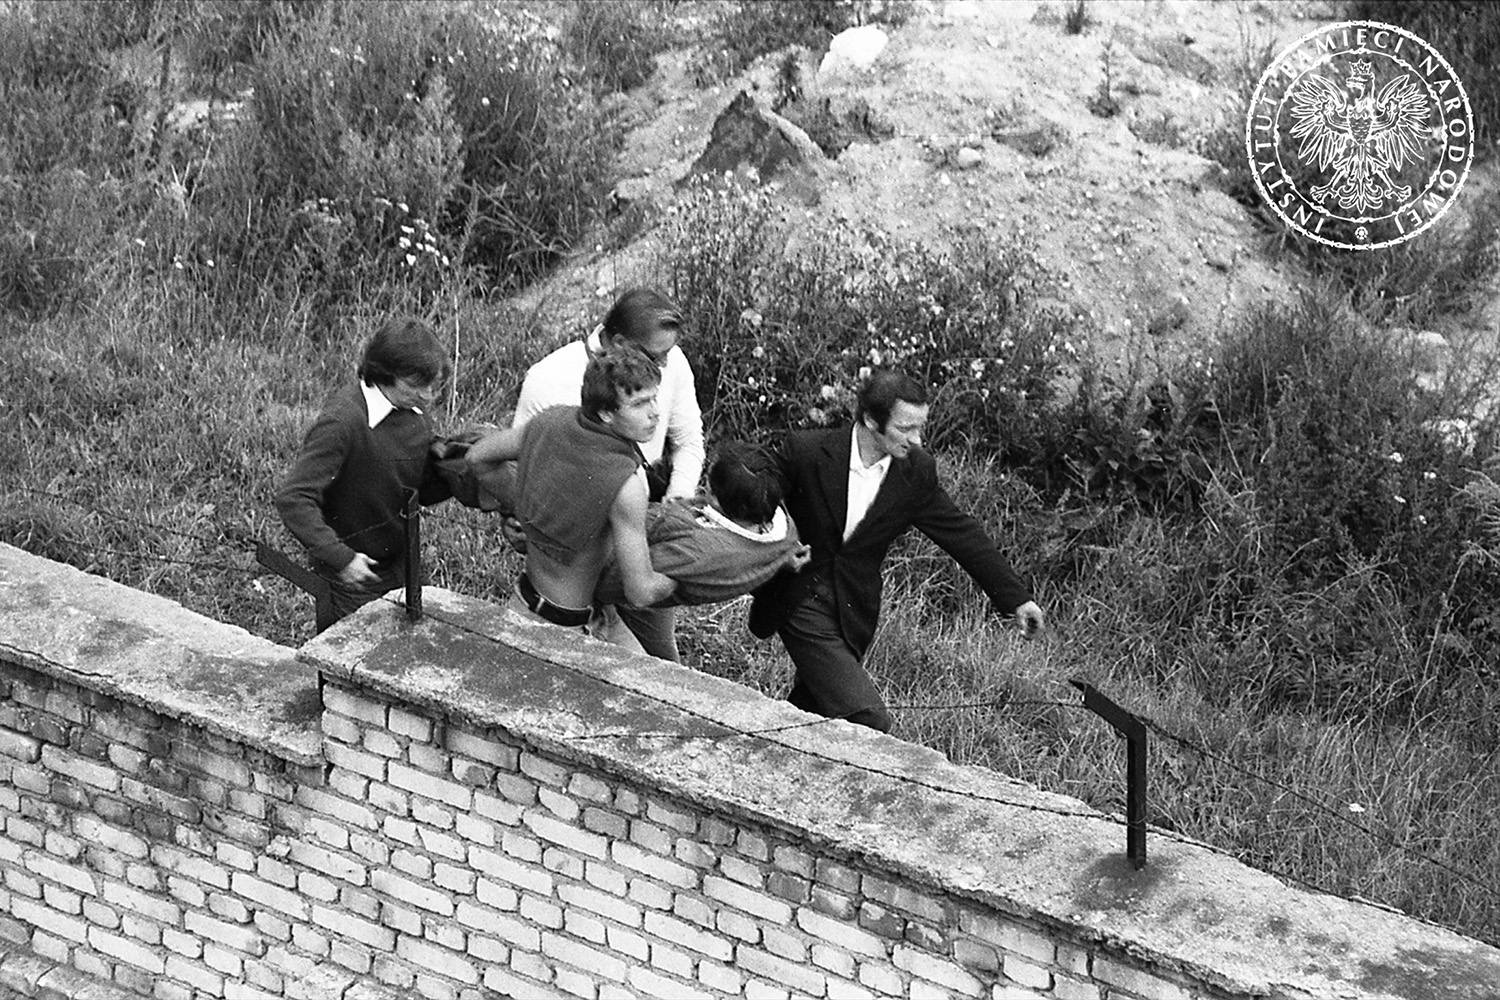 Mężczyźni niosący poszkodowanego podczas zamieszek w Gdańsku, prawdopodobnie w 1982 r. w rocznicę podpisania porozumień sierpniowych